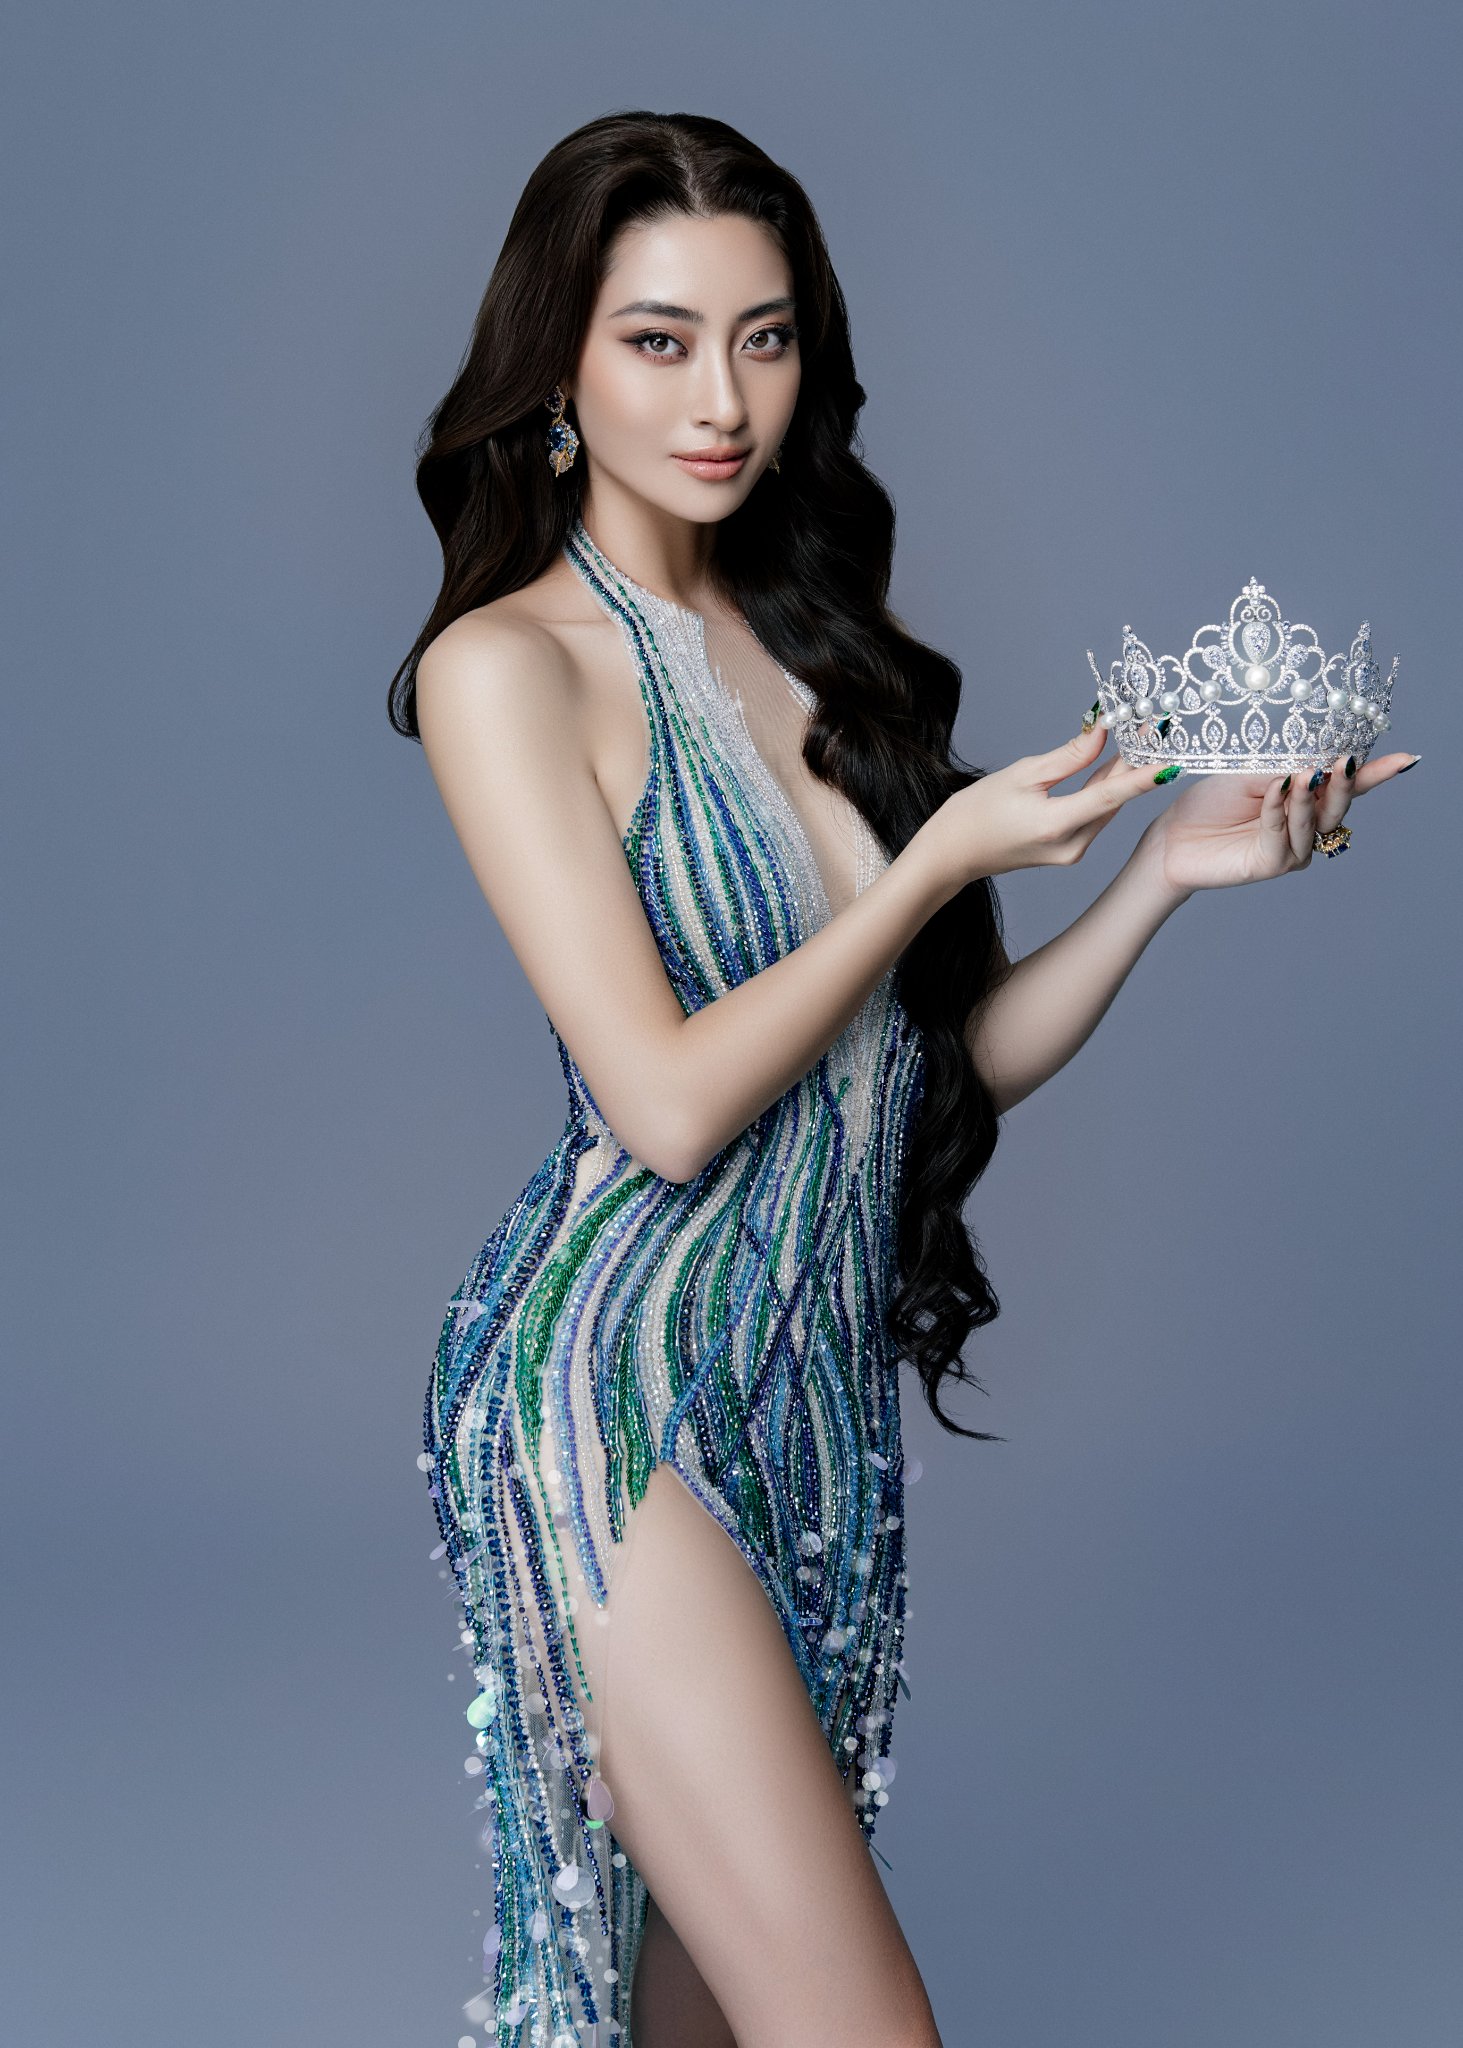 Lương Thùy Linh Miss World Vietnam 2019: “Tôi không gồng mình để giữ tên tuổi” - Ảnh 7.